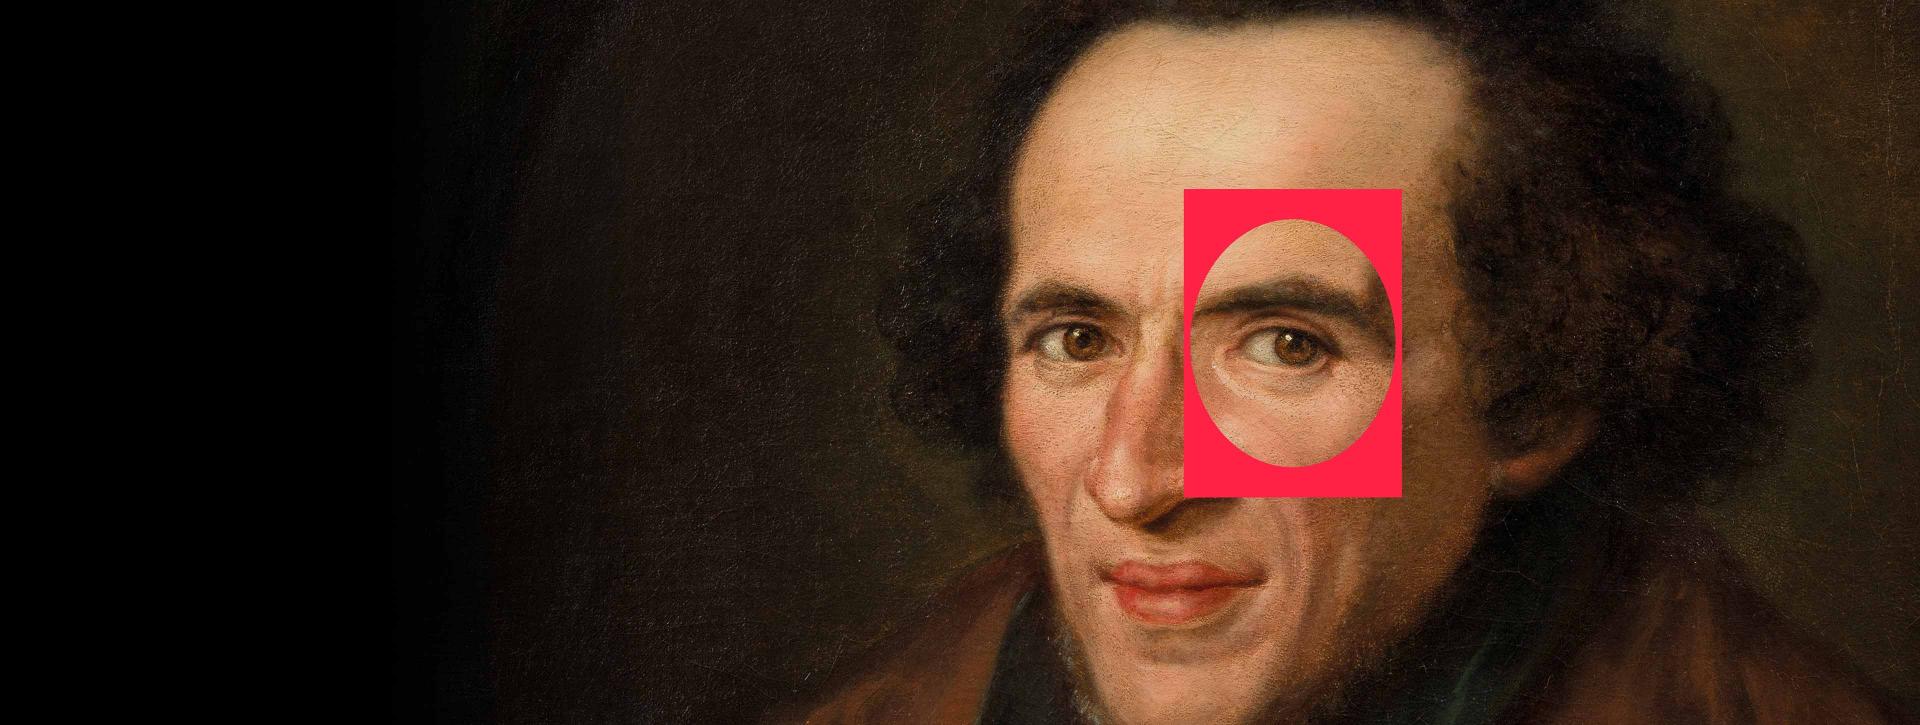 Ausschnitt aus einem Ölgemälde: Porträt von Moses Mendelssohn im Halbprofil, die Augen sind auf die Betrachtenden gerichtet, das linke ist durch einen roten Rahmen hervorgehoben.